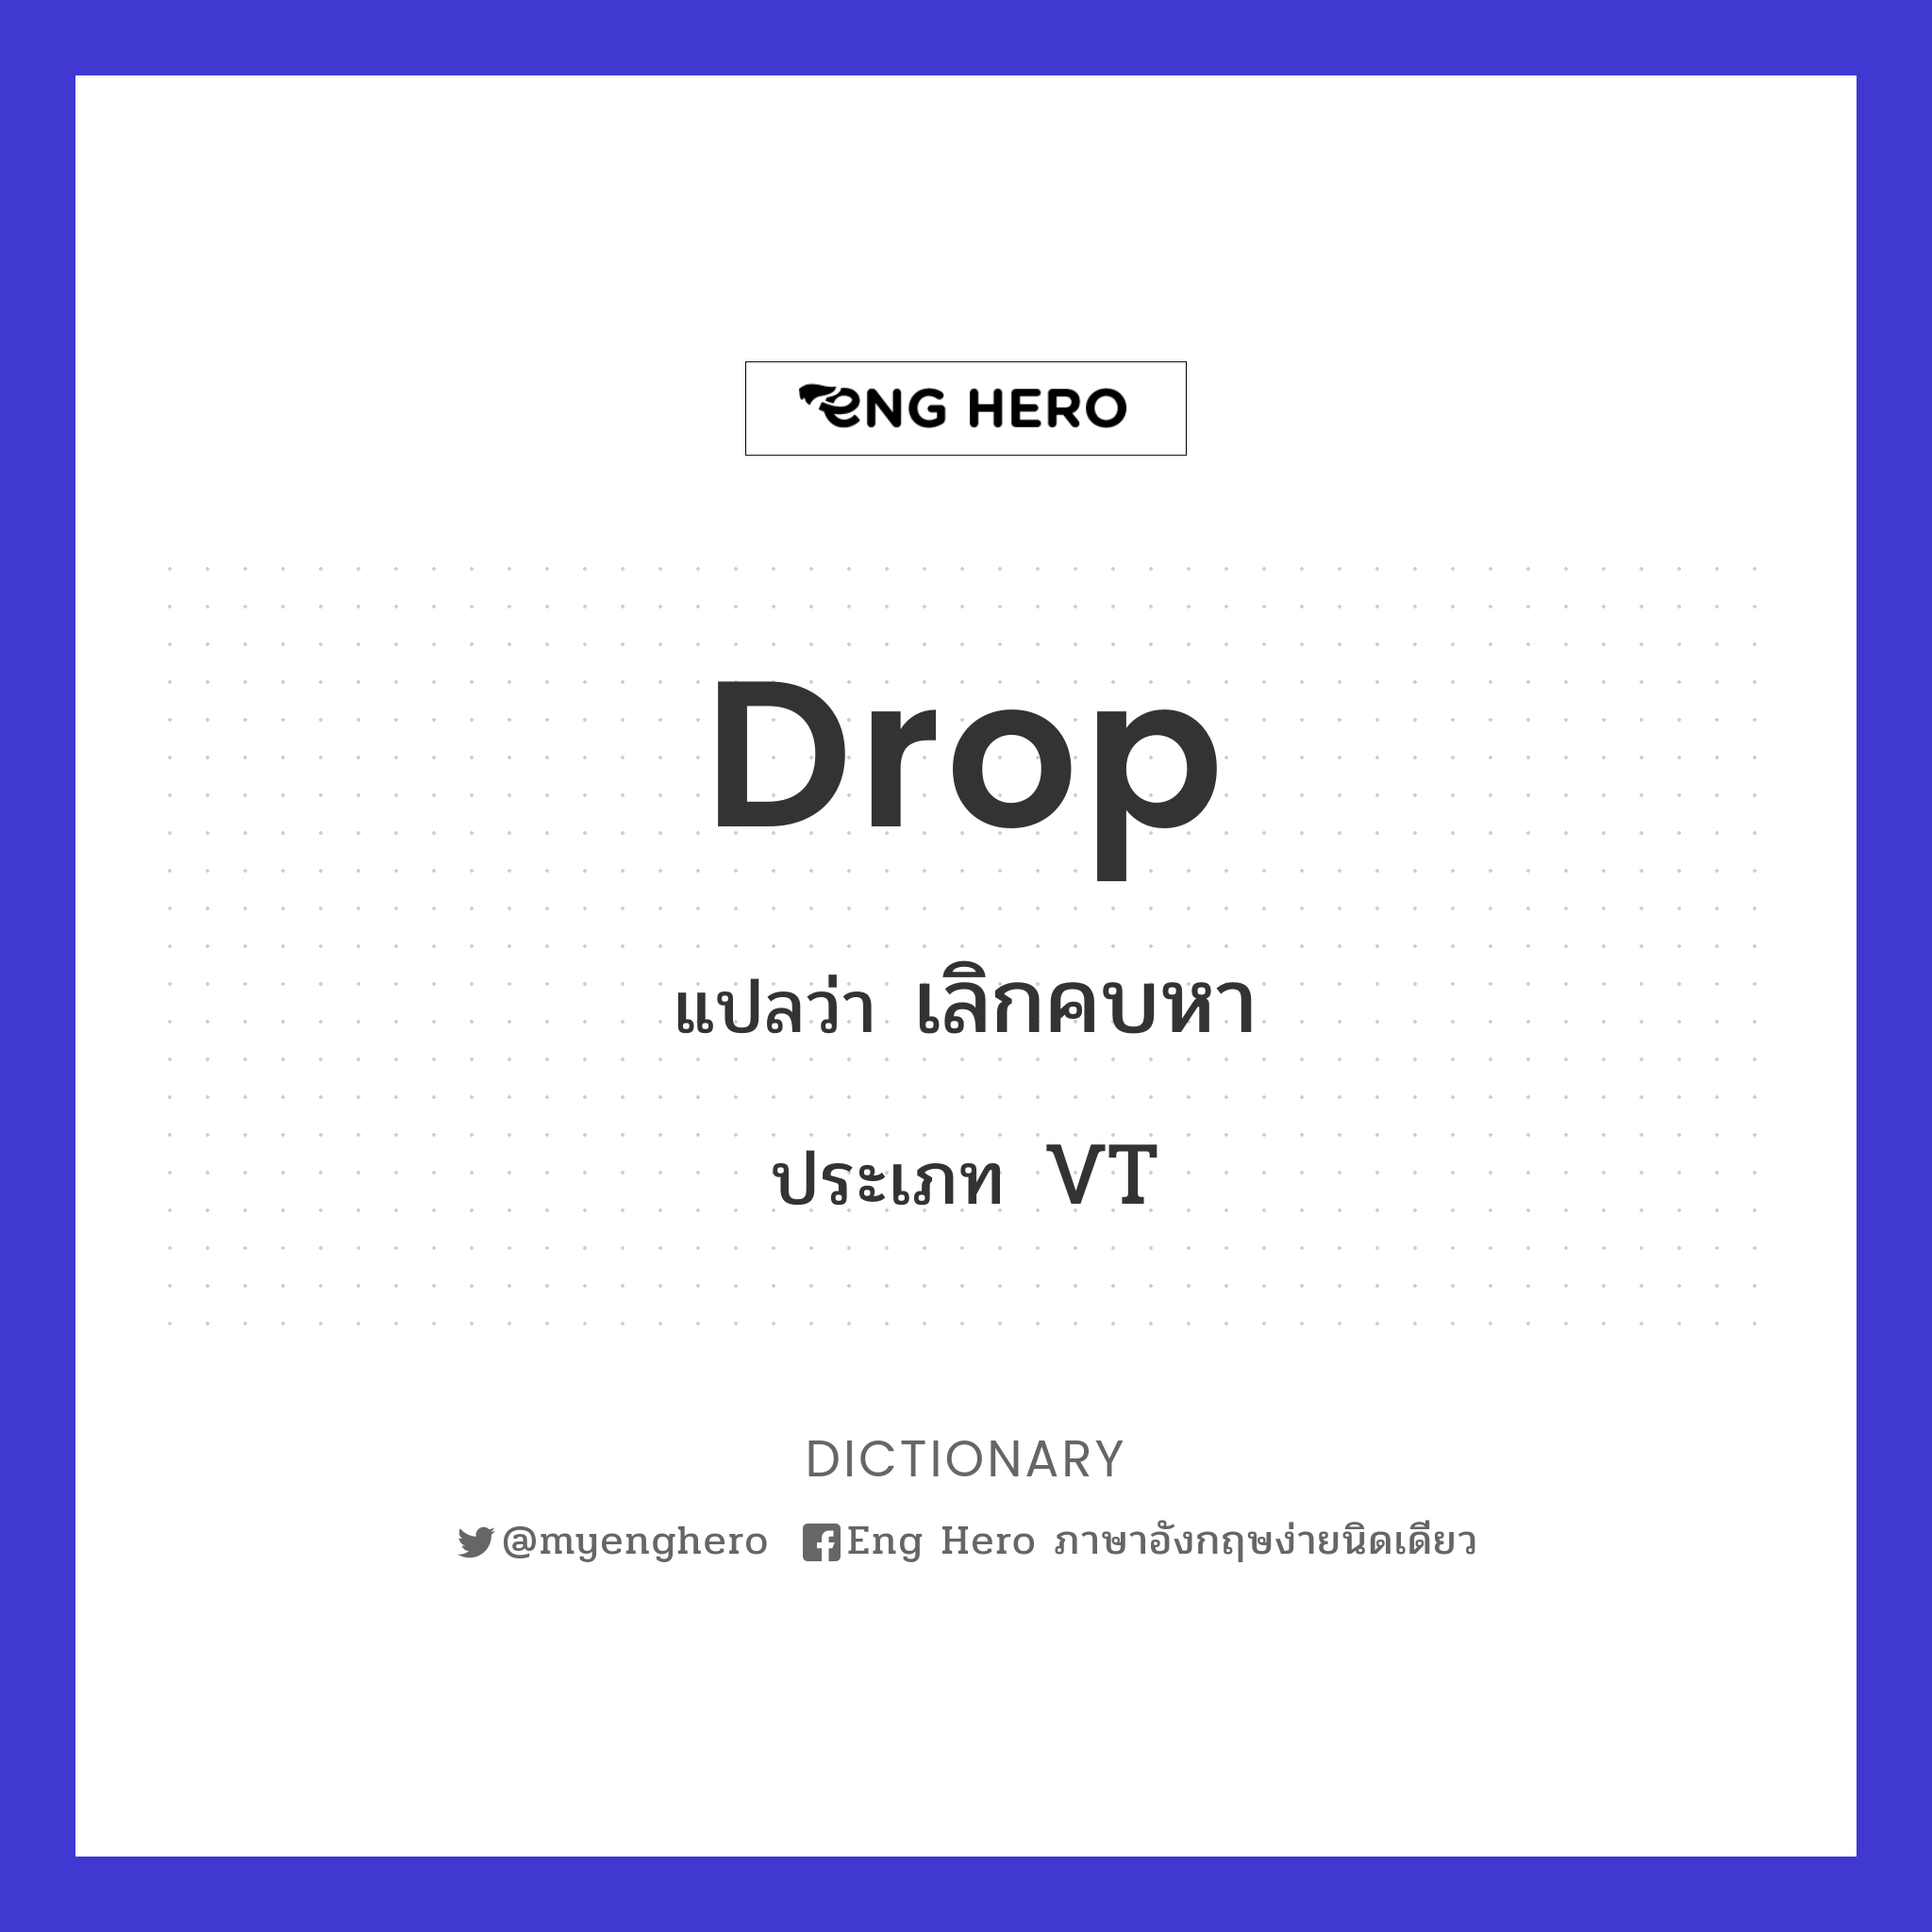 drop